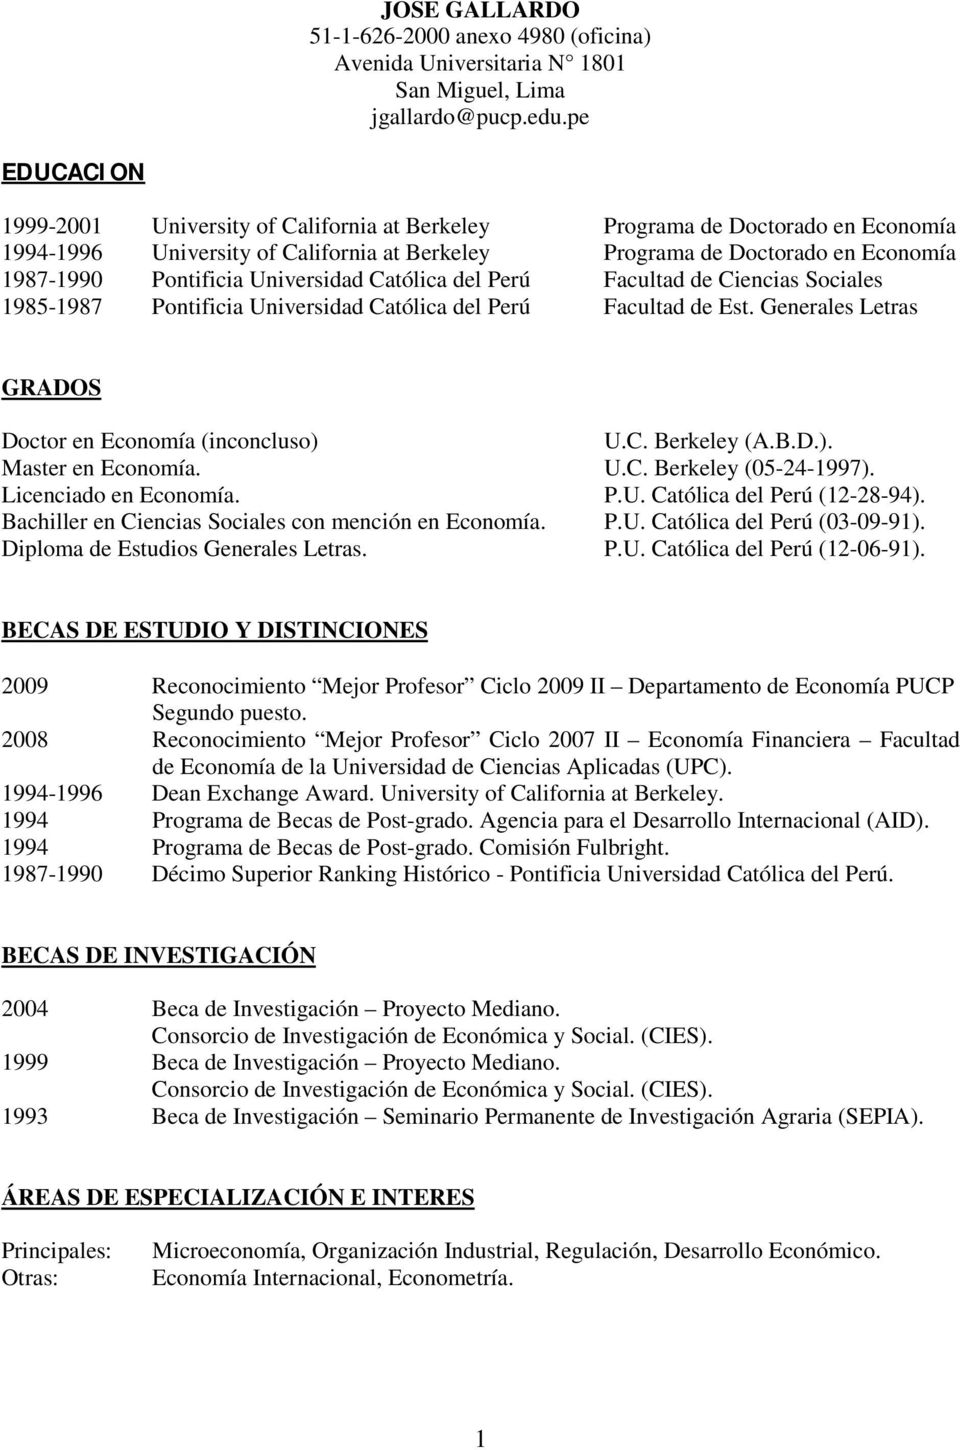 Universidad Católica del Perú Facultad de Ciencias Sociales 1985-1987 Pontificia Universidad Católica del Perú Facultad de Est. Generales Letras GRADOS Doctor en Economía (inconcluso) U.C. Berkeley (A.